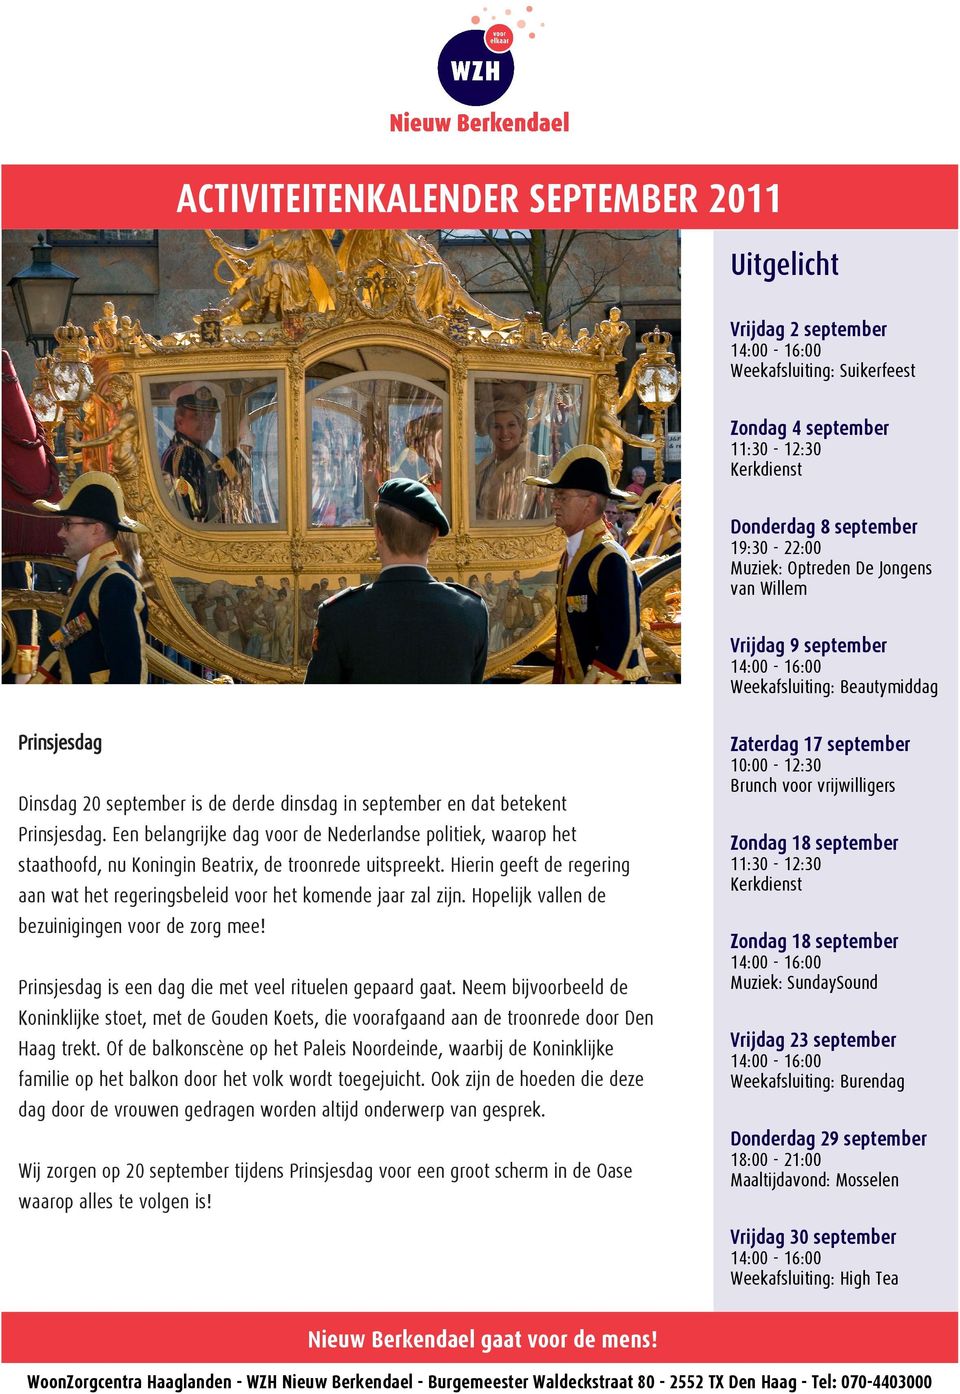 Een belangrijke dag voor de Nederlandse politiek, waarop het staathoofd, nu Koningin Beatrix, de troonrede uitspreekt.